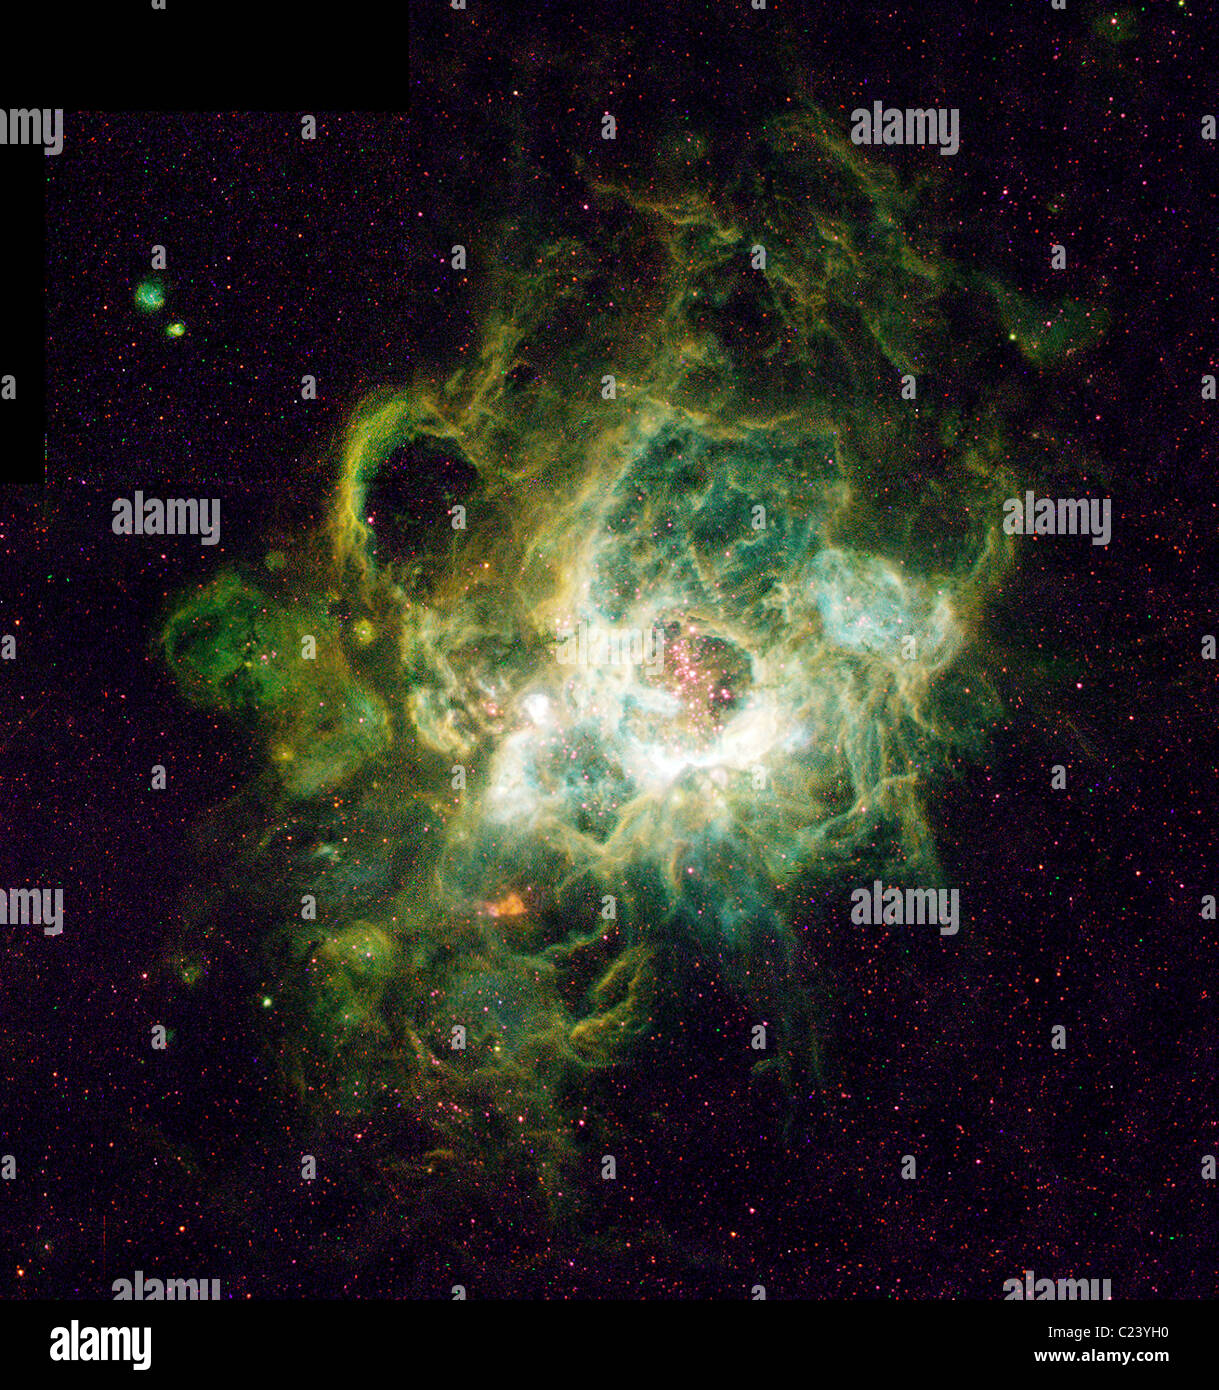 Pépinière De nouvelles stars c'est un télescope spatial Hubble de droit (droit) d'un vaste appelé nébuleuse NGC 604 Banque D'Images